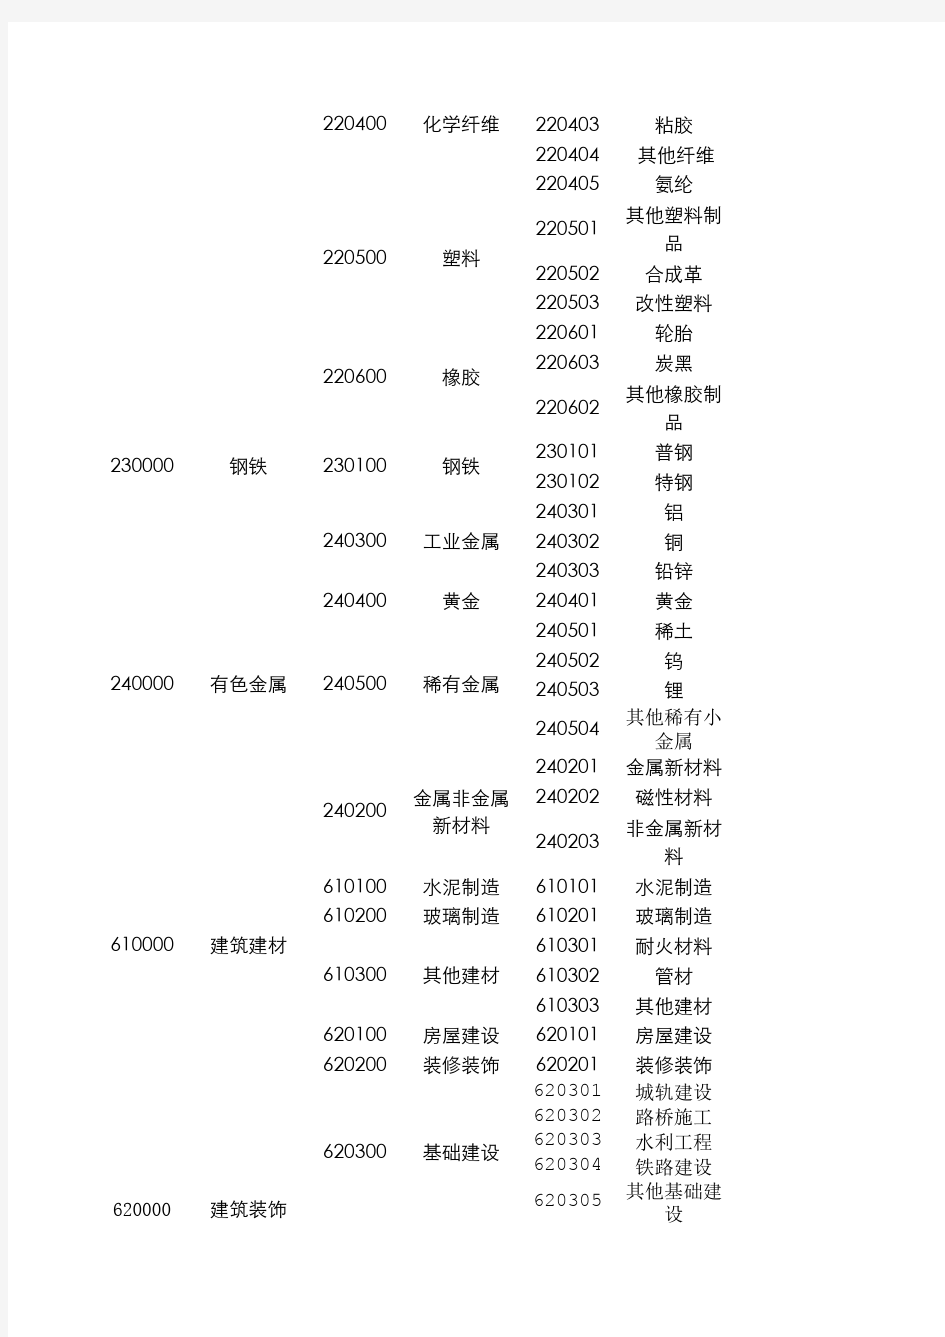 2015申万行业分类